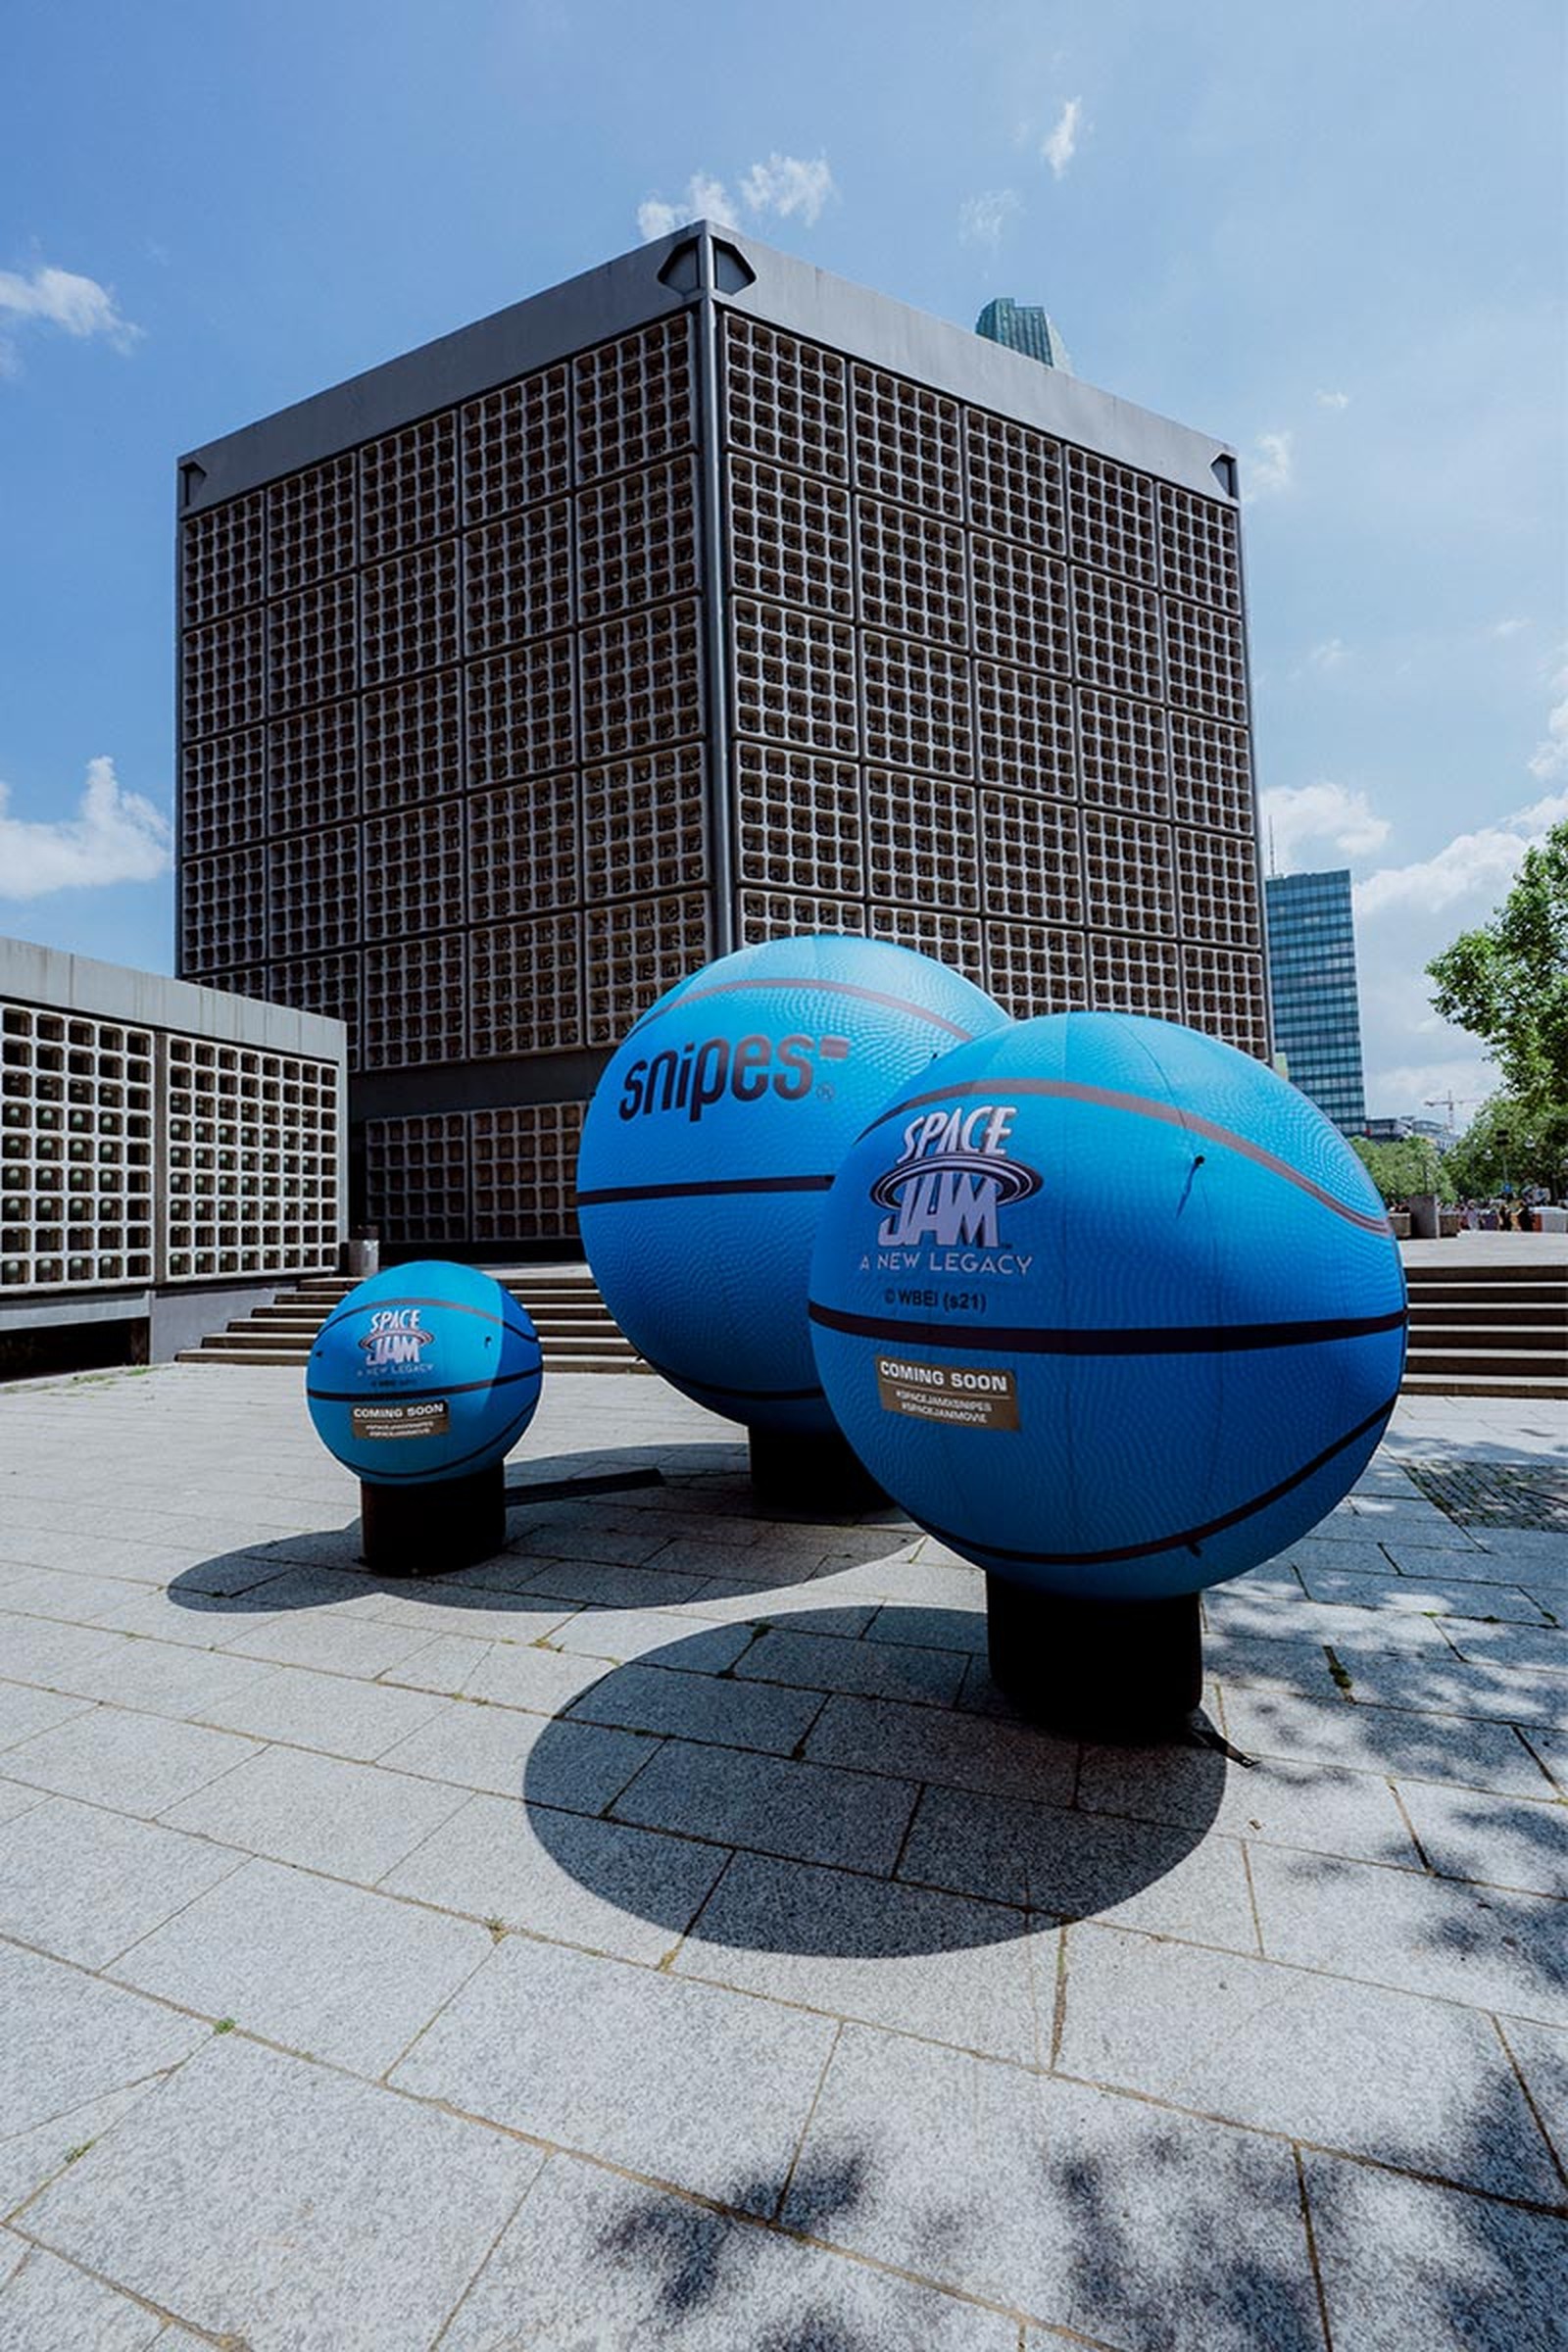 Snipes Blue basketballs